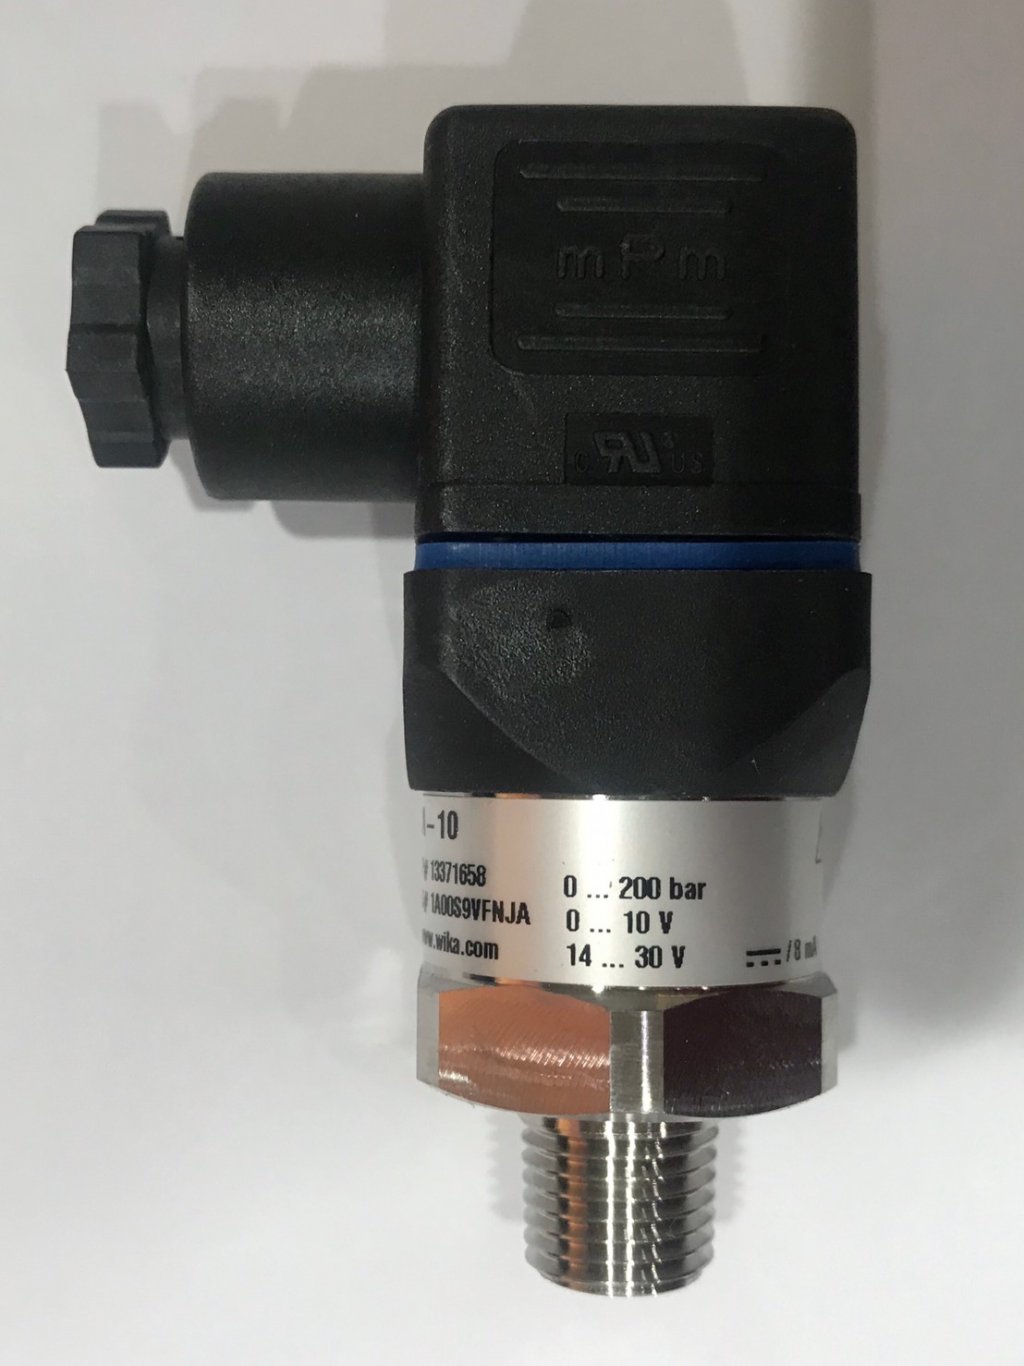 壓力傳送器 壓力傳感器 Pressure Sensor